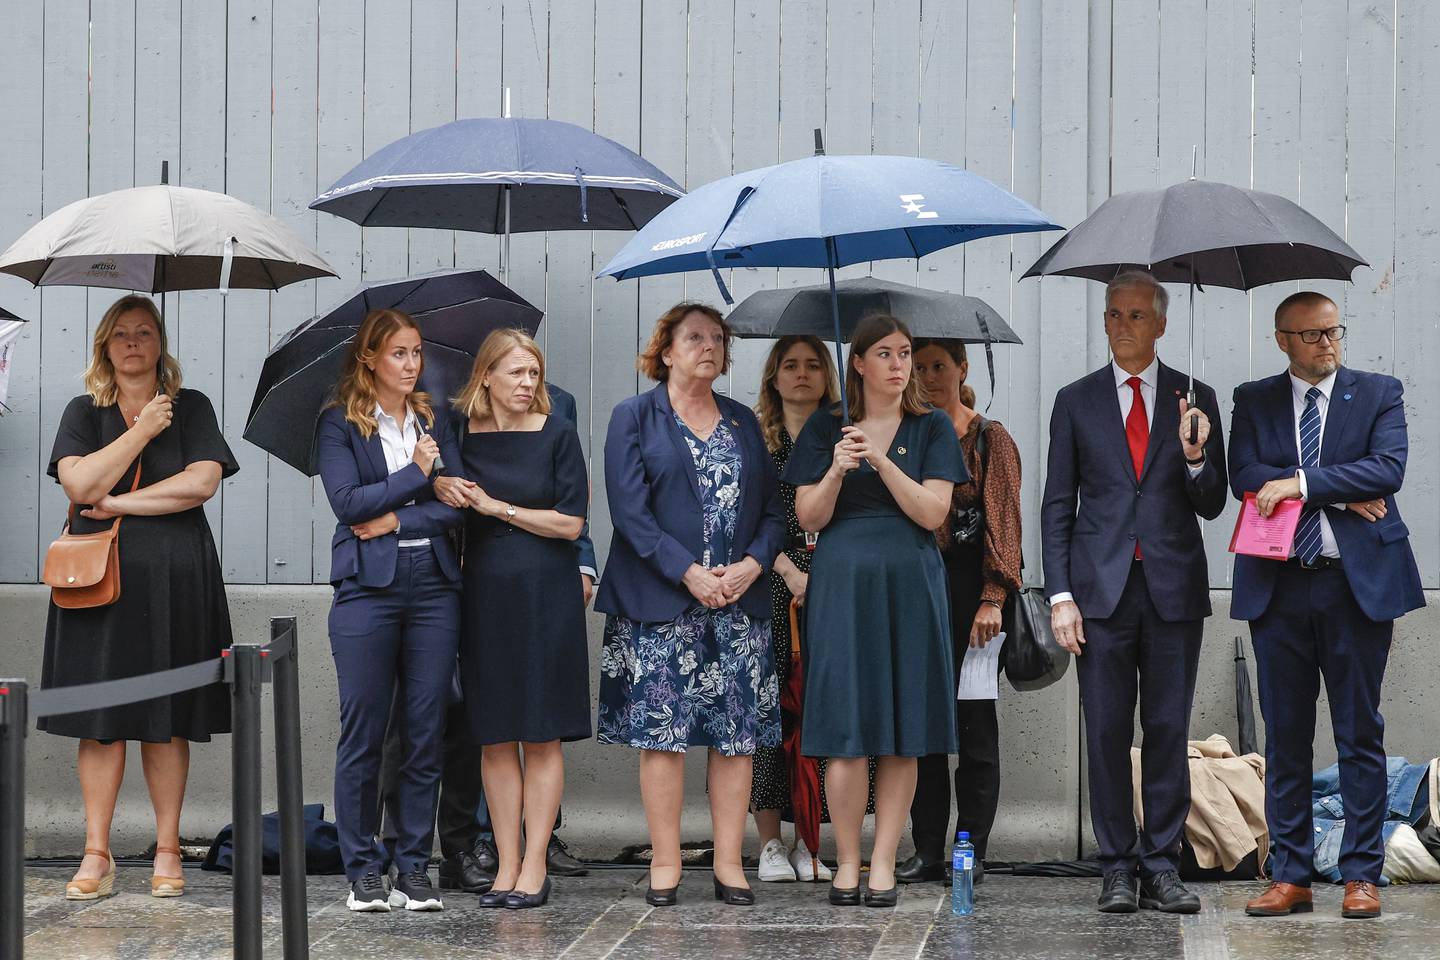 Paraplyene kom frem på grunn av regnværet i Oslo under minnemarkeringen i Regjeringskvartalet, 11 år terrorangrepet 22.juli 2011.